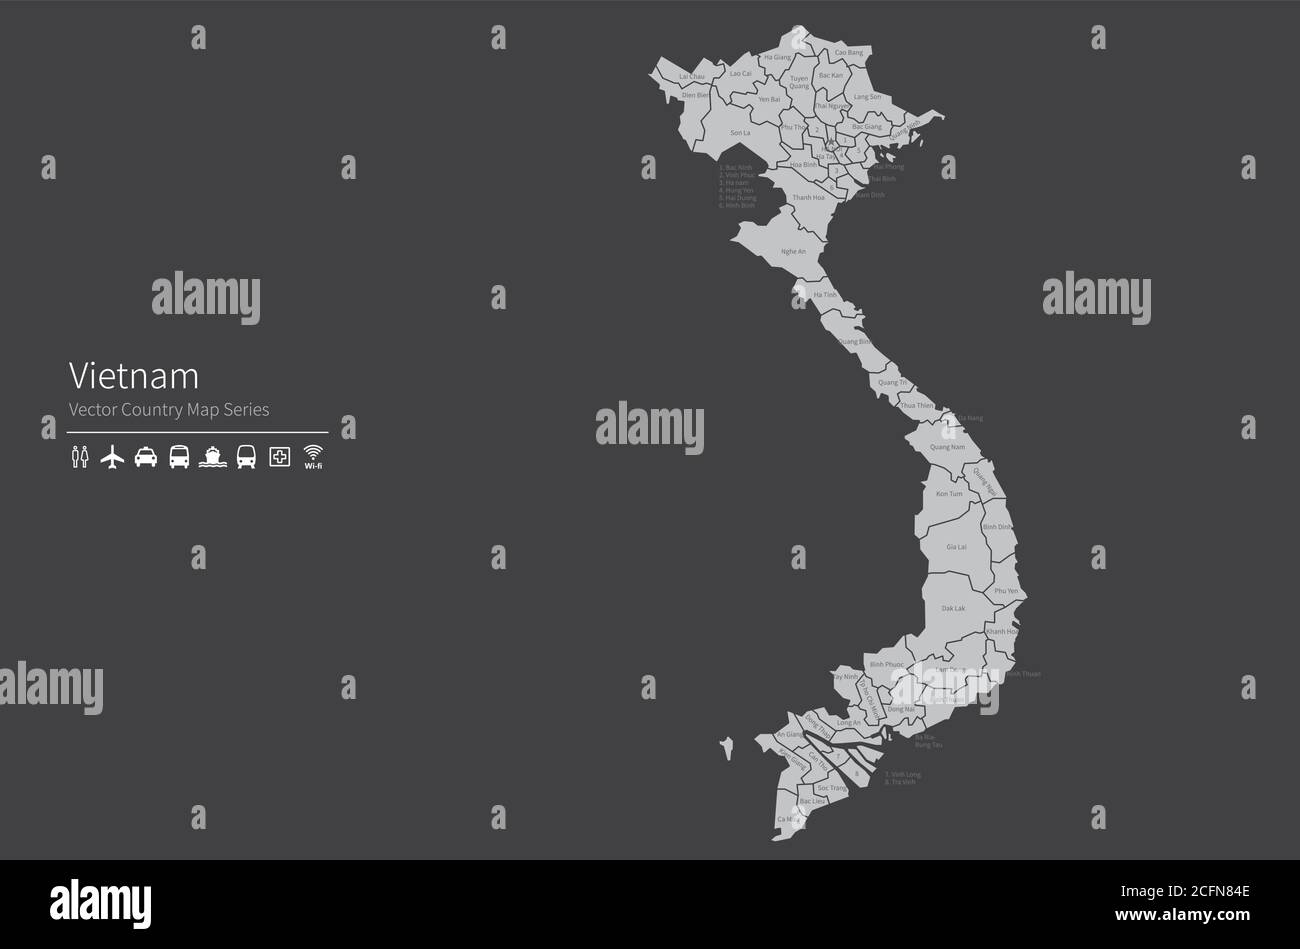 Vietnam-Karte. Nationale Karte der Welt. Grau gefärbte Länder Kartenserie. Stock Vektor